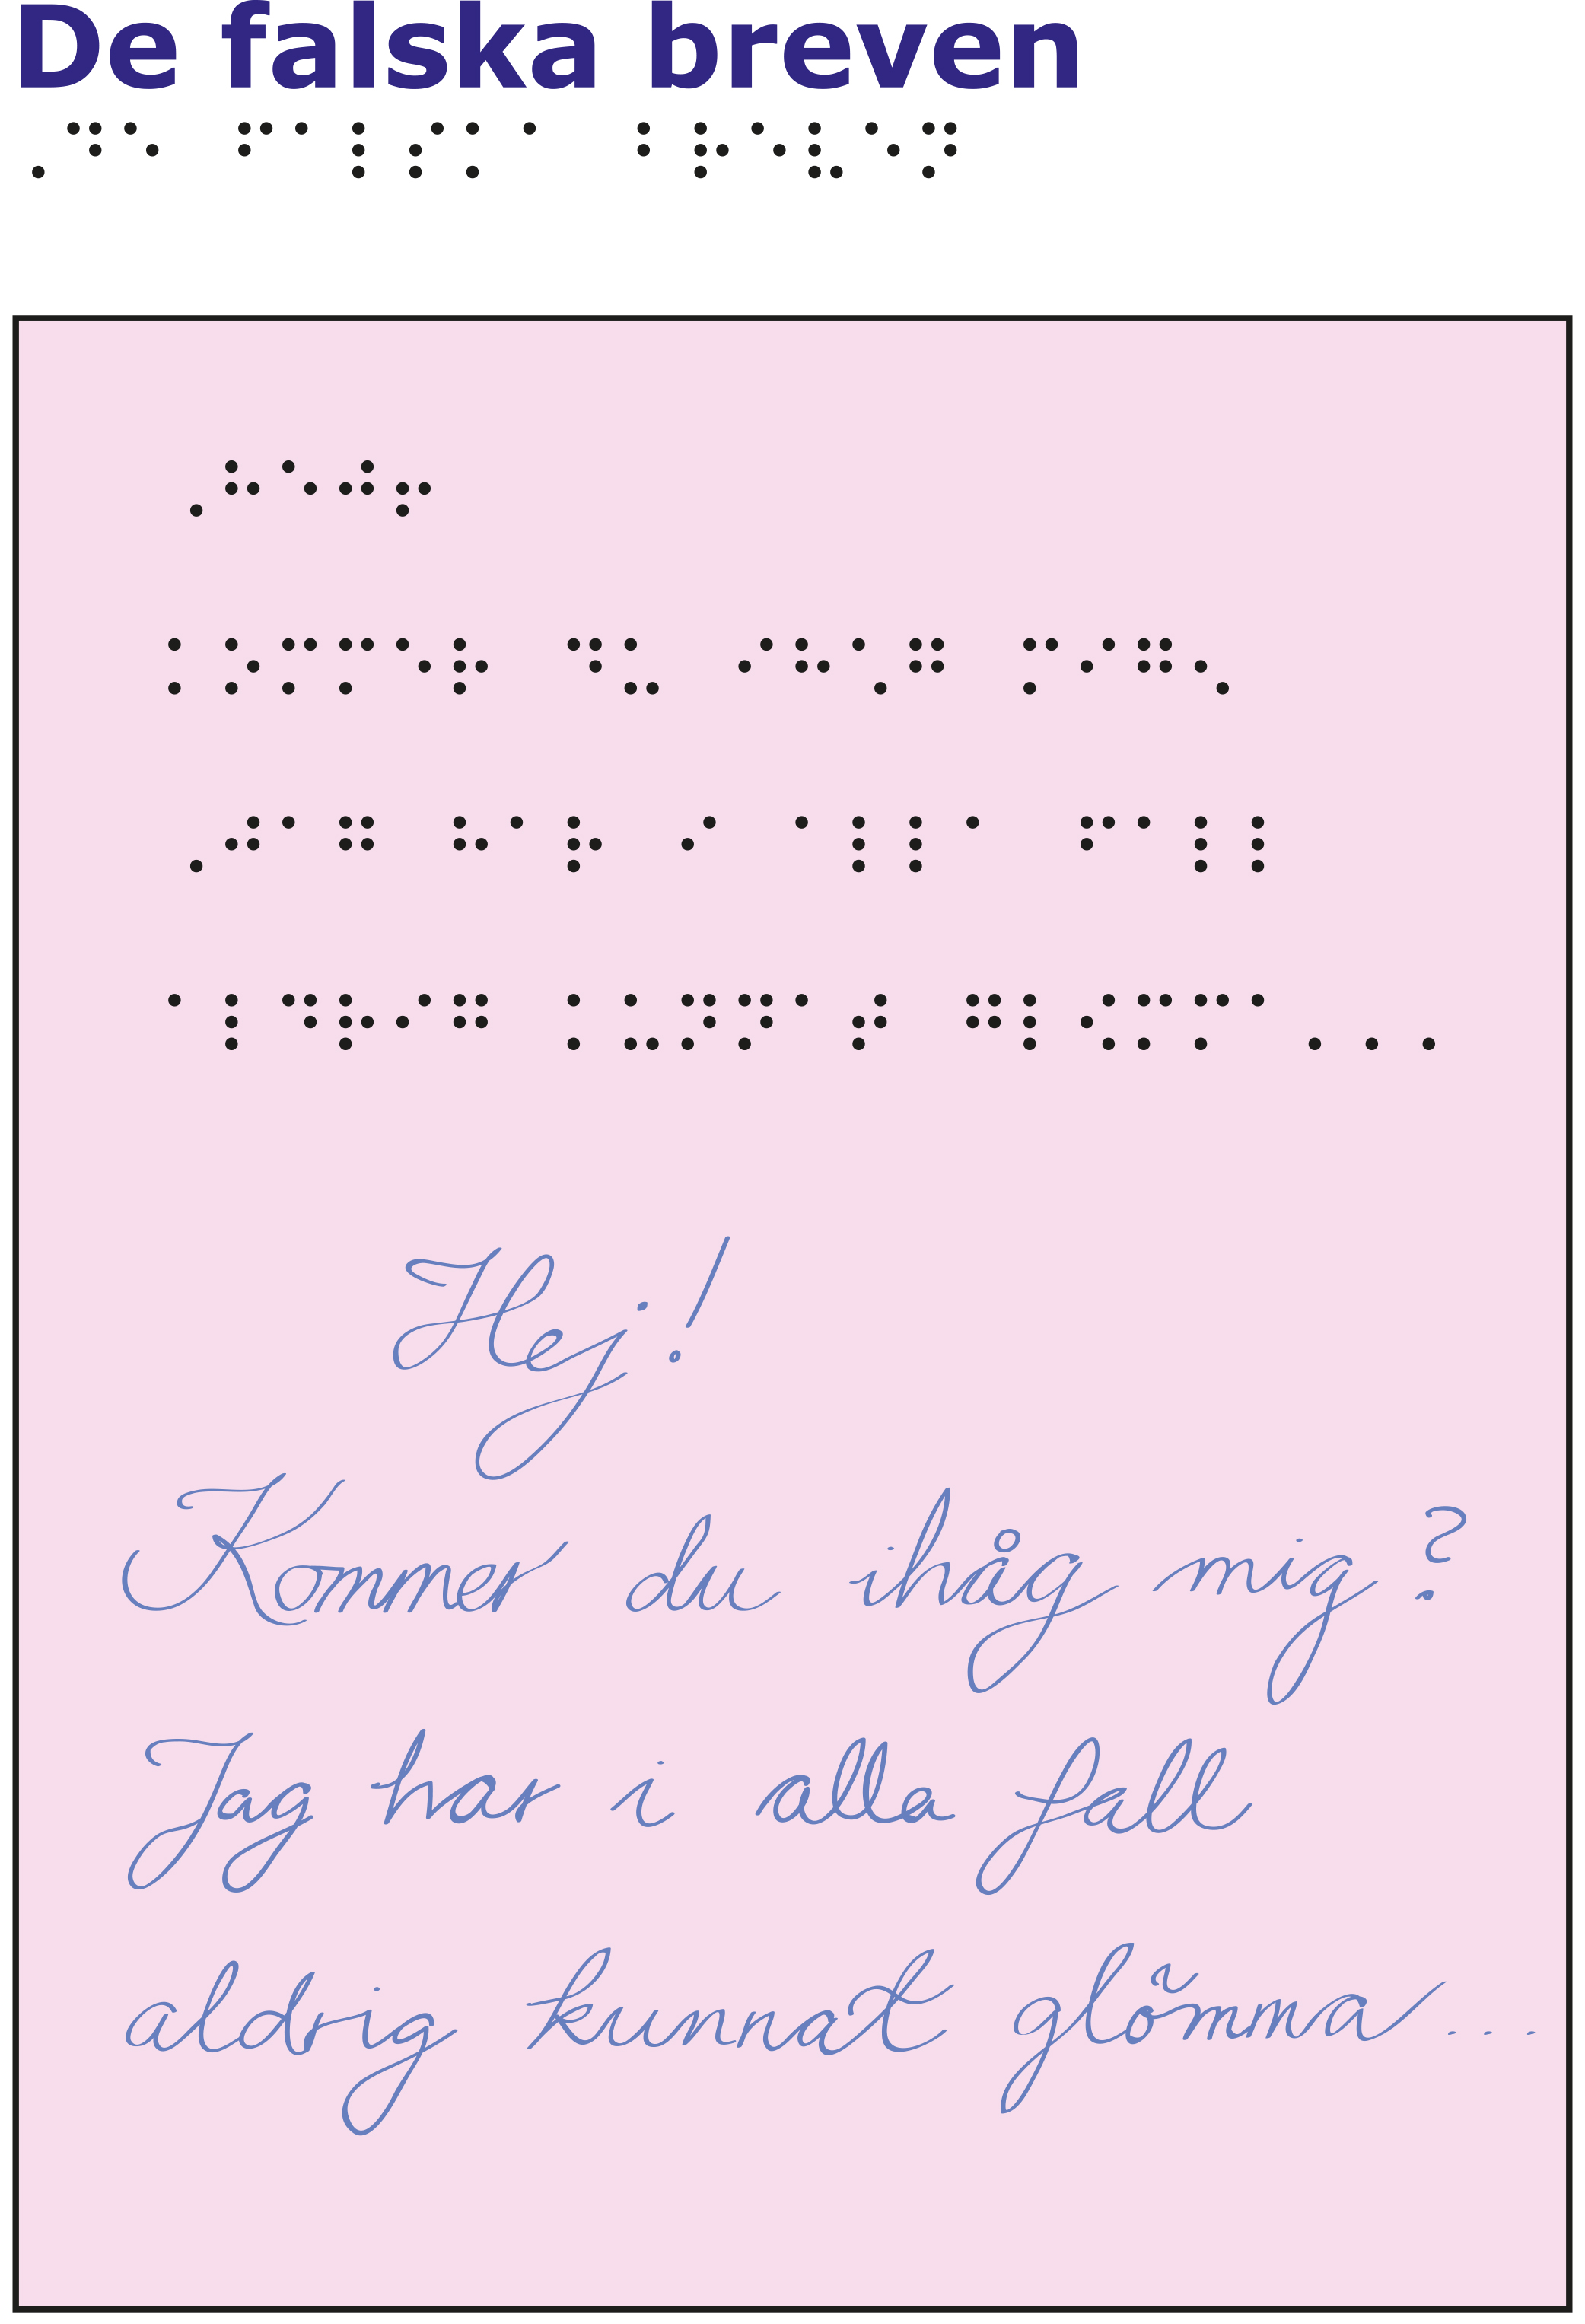 Rosa papper med texten "Hej! Kommer du ihåg mig? Jag har i alla fall aldrig kunnat glömma..." med samma text ovanför i punktskrift.